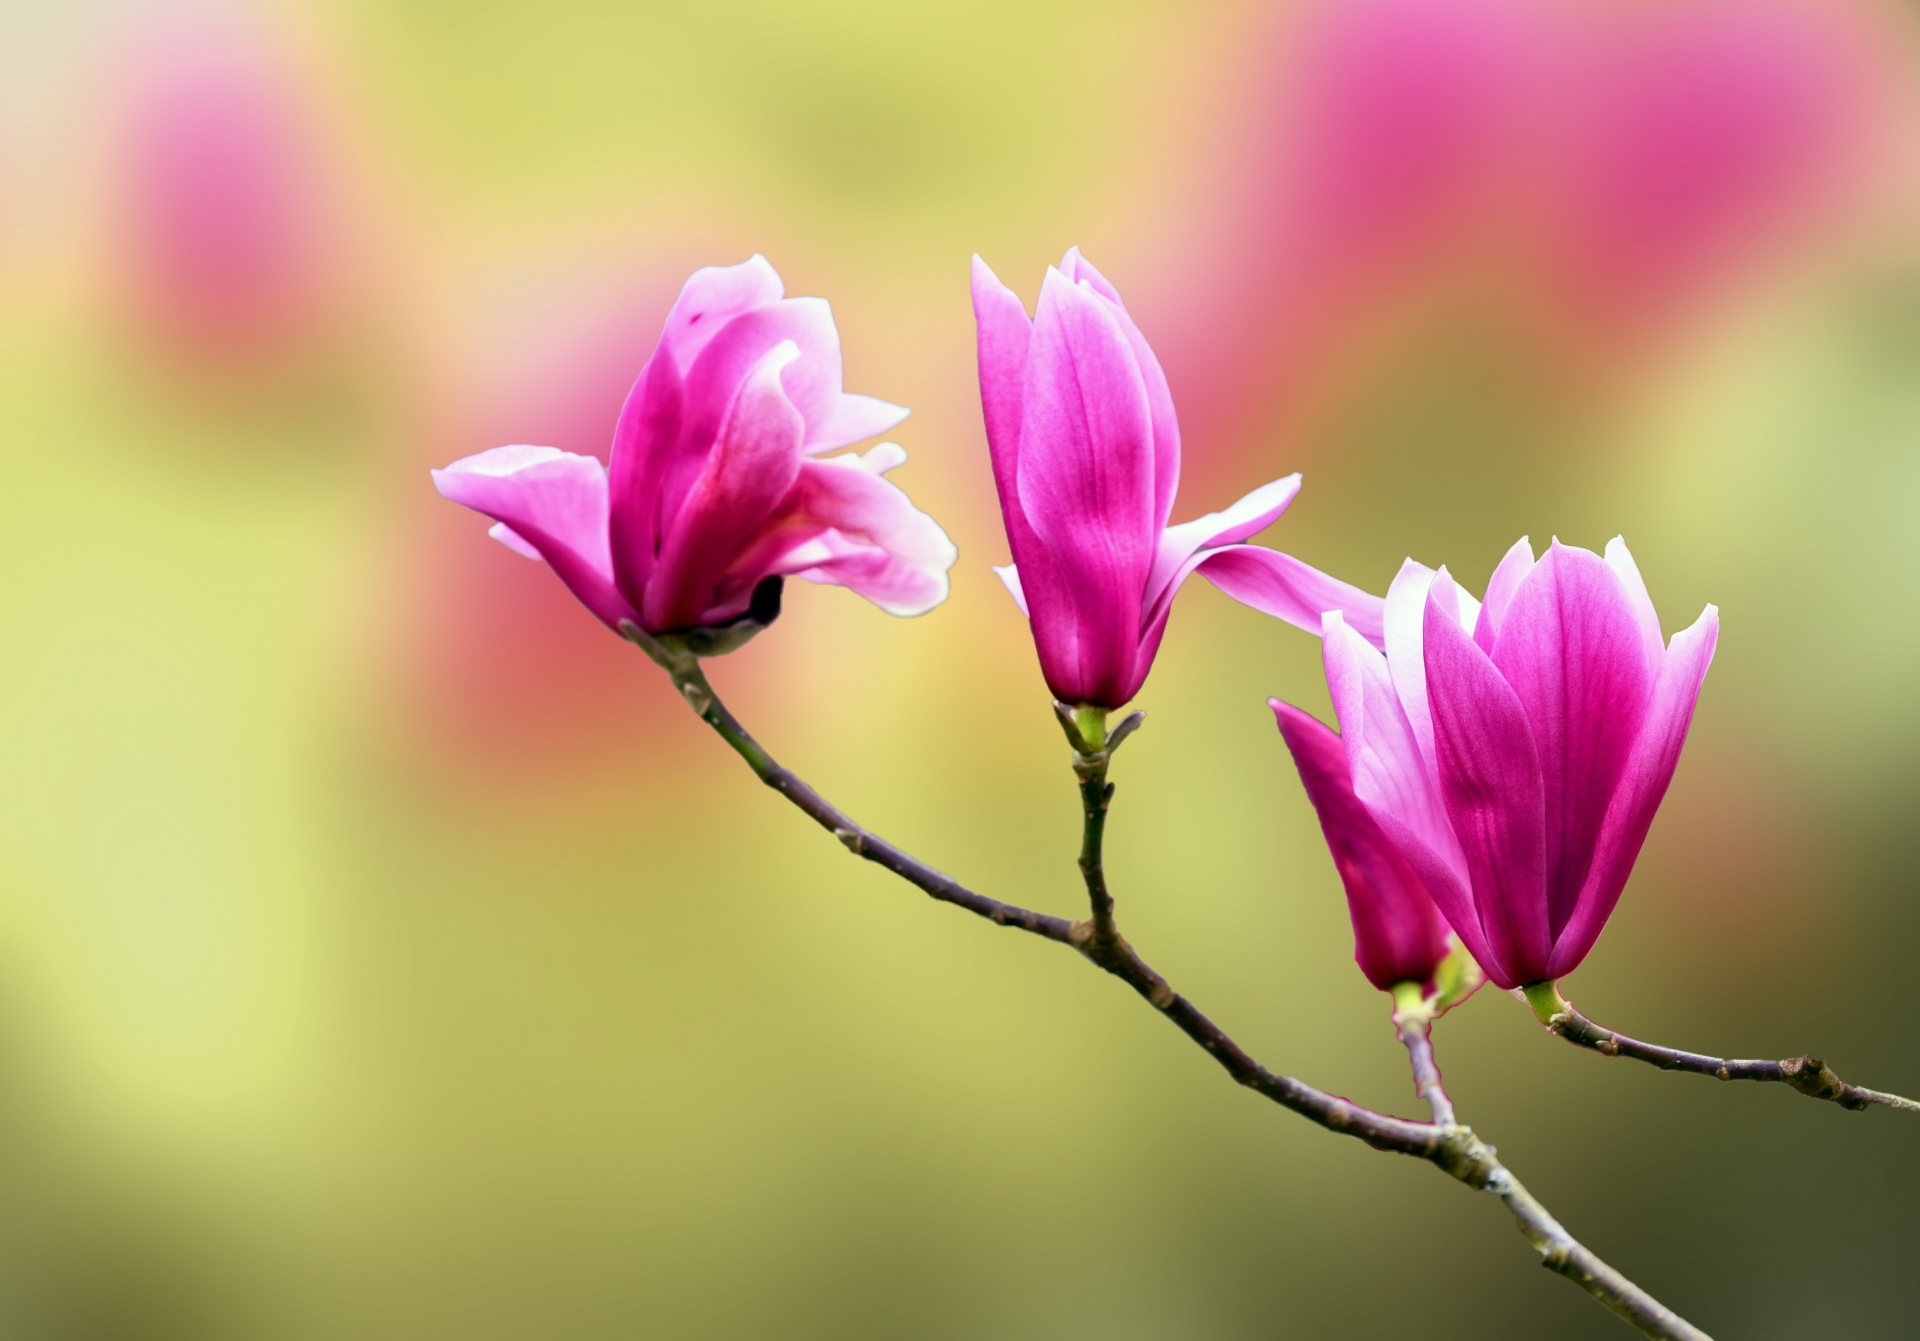 Pink magnolia tree blossom flowers